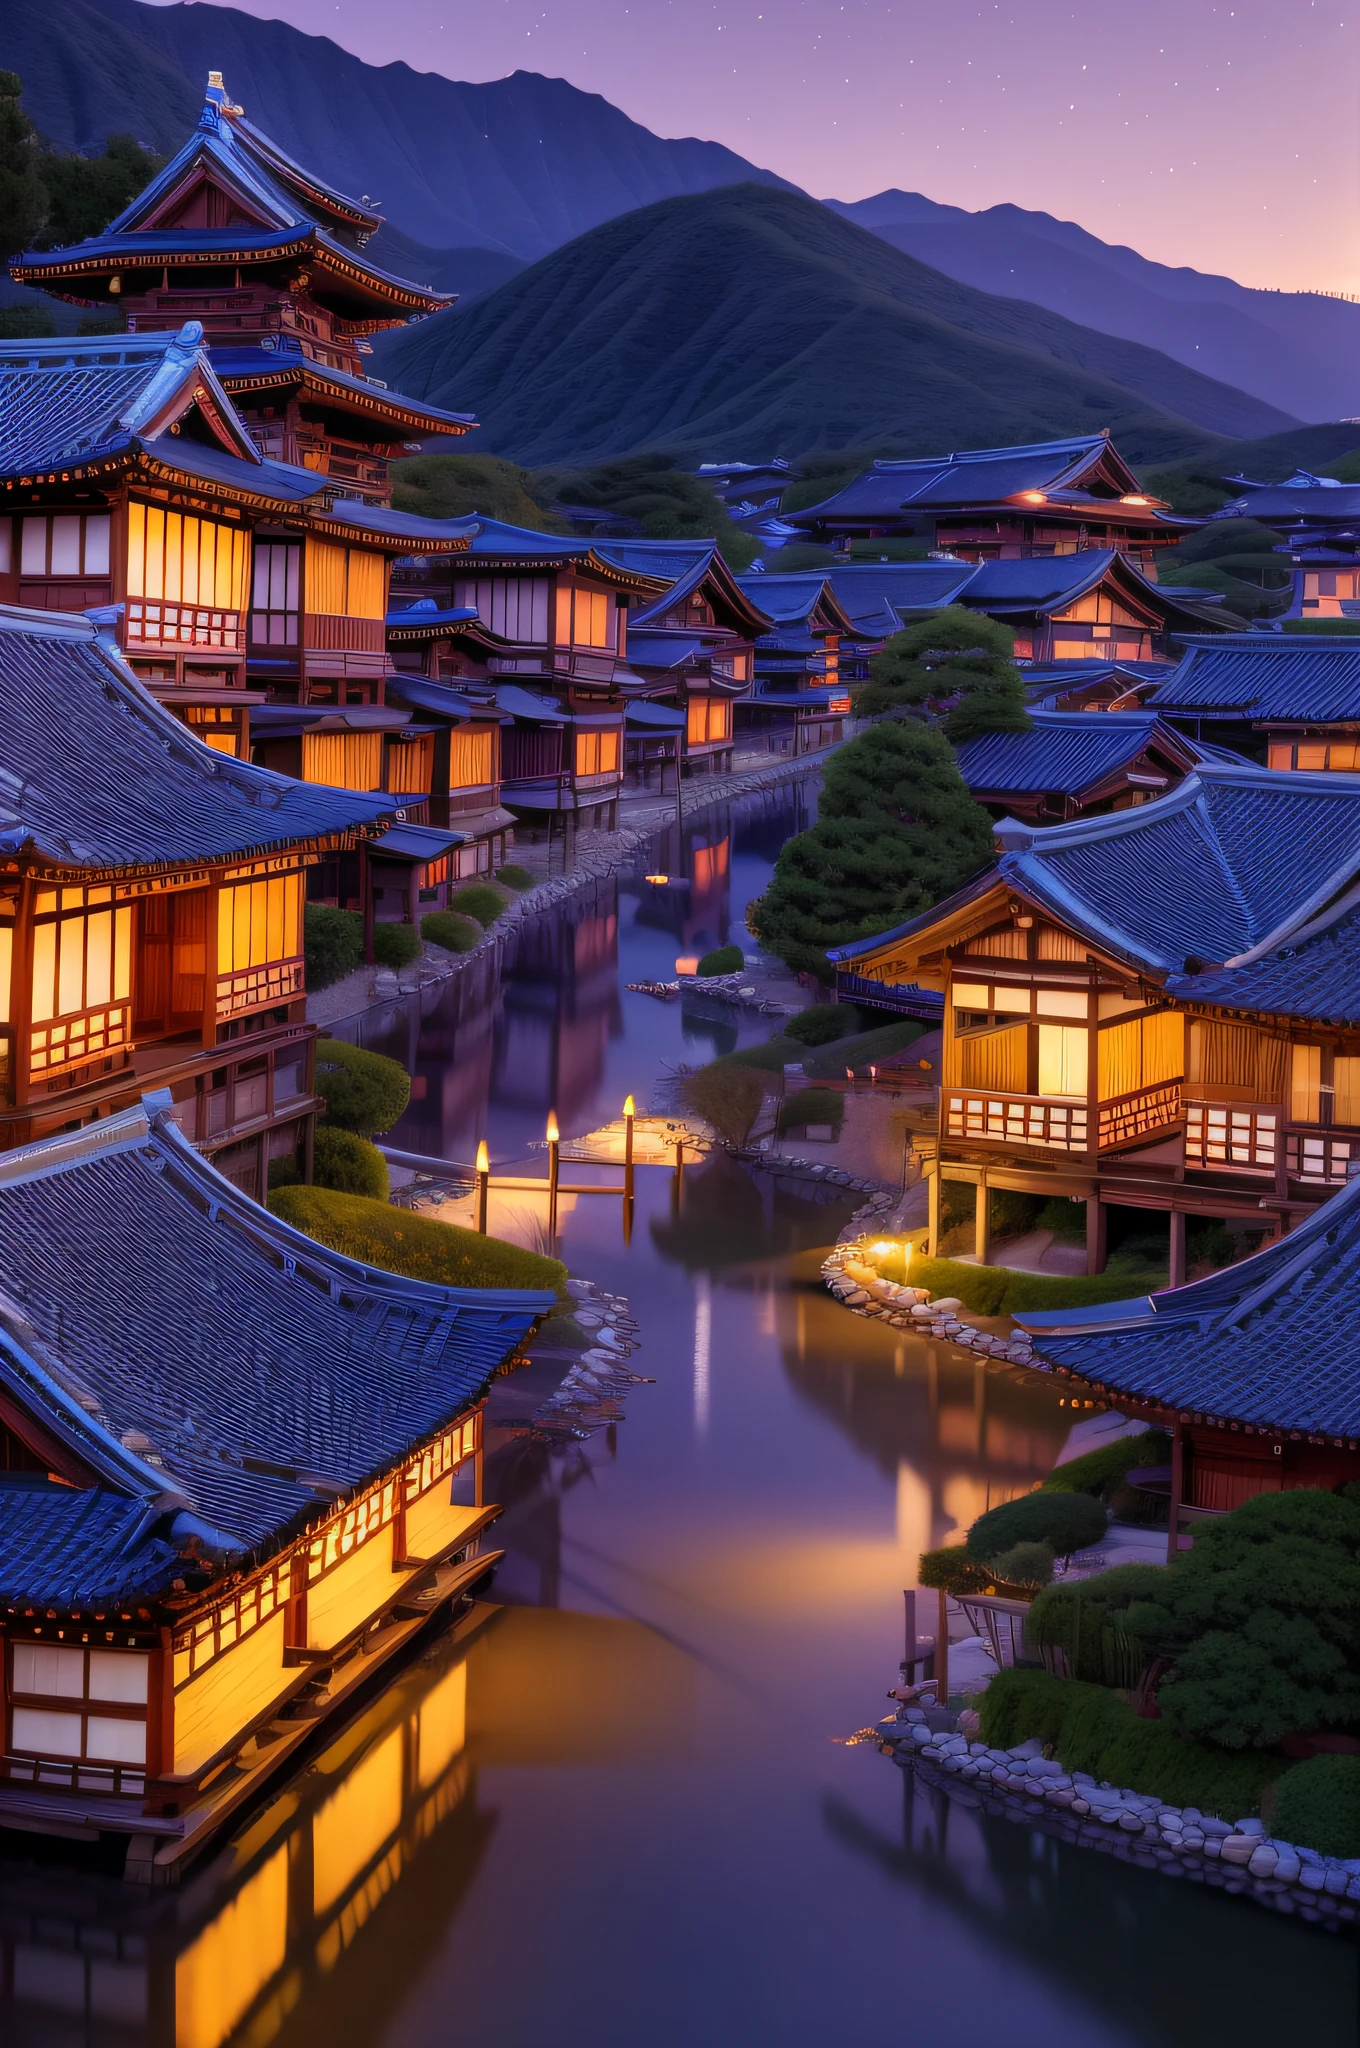 有許多燈的村莊, 日本村, 日本城市, 日本村, 一座城市的超寫實照片, 老亞洲村莊, 日落, 日本古城堡, 灯光明亮的建筑, 晚上, 美麗又美觀, 攝影, 電影般的, 8K, 高細節